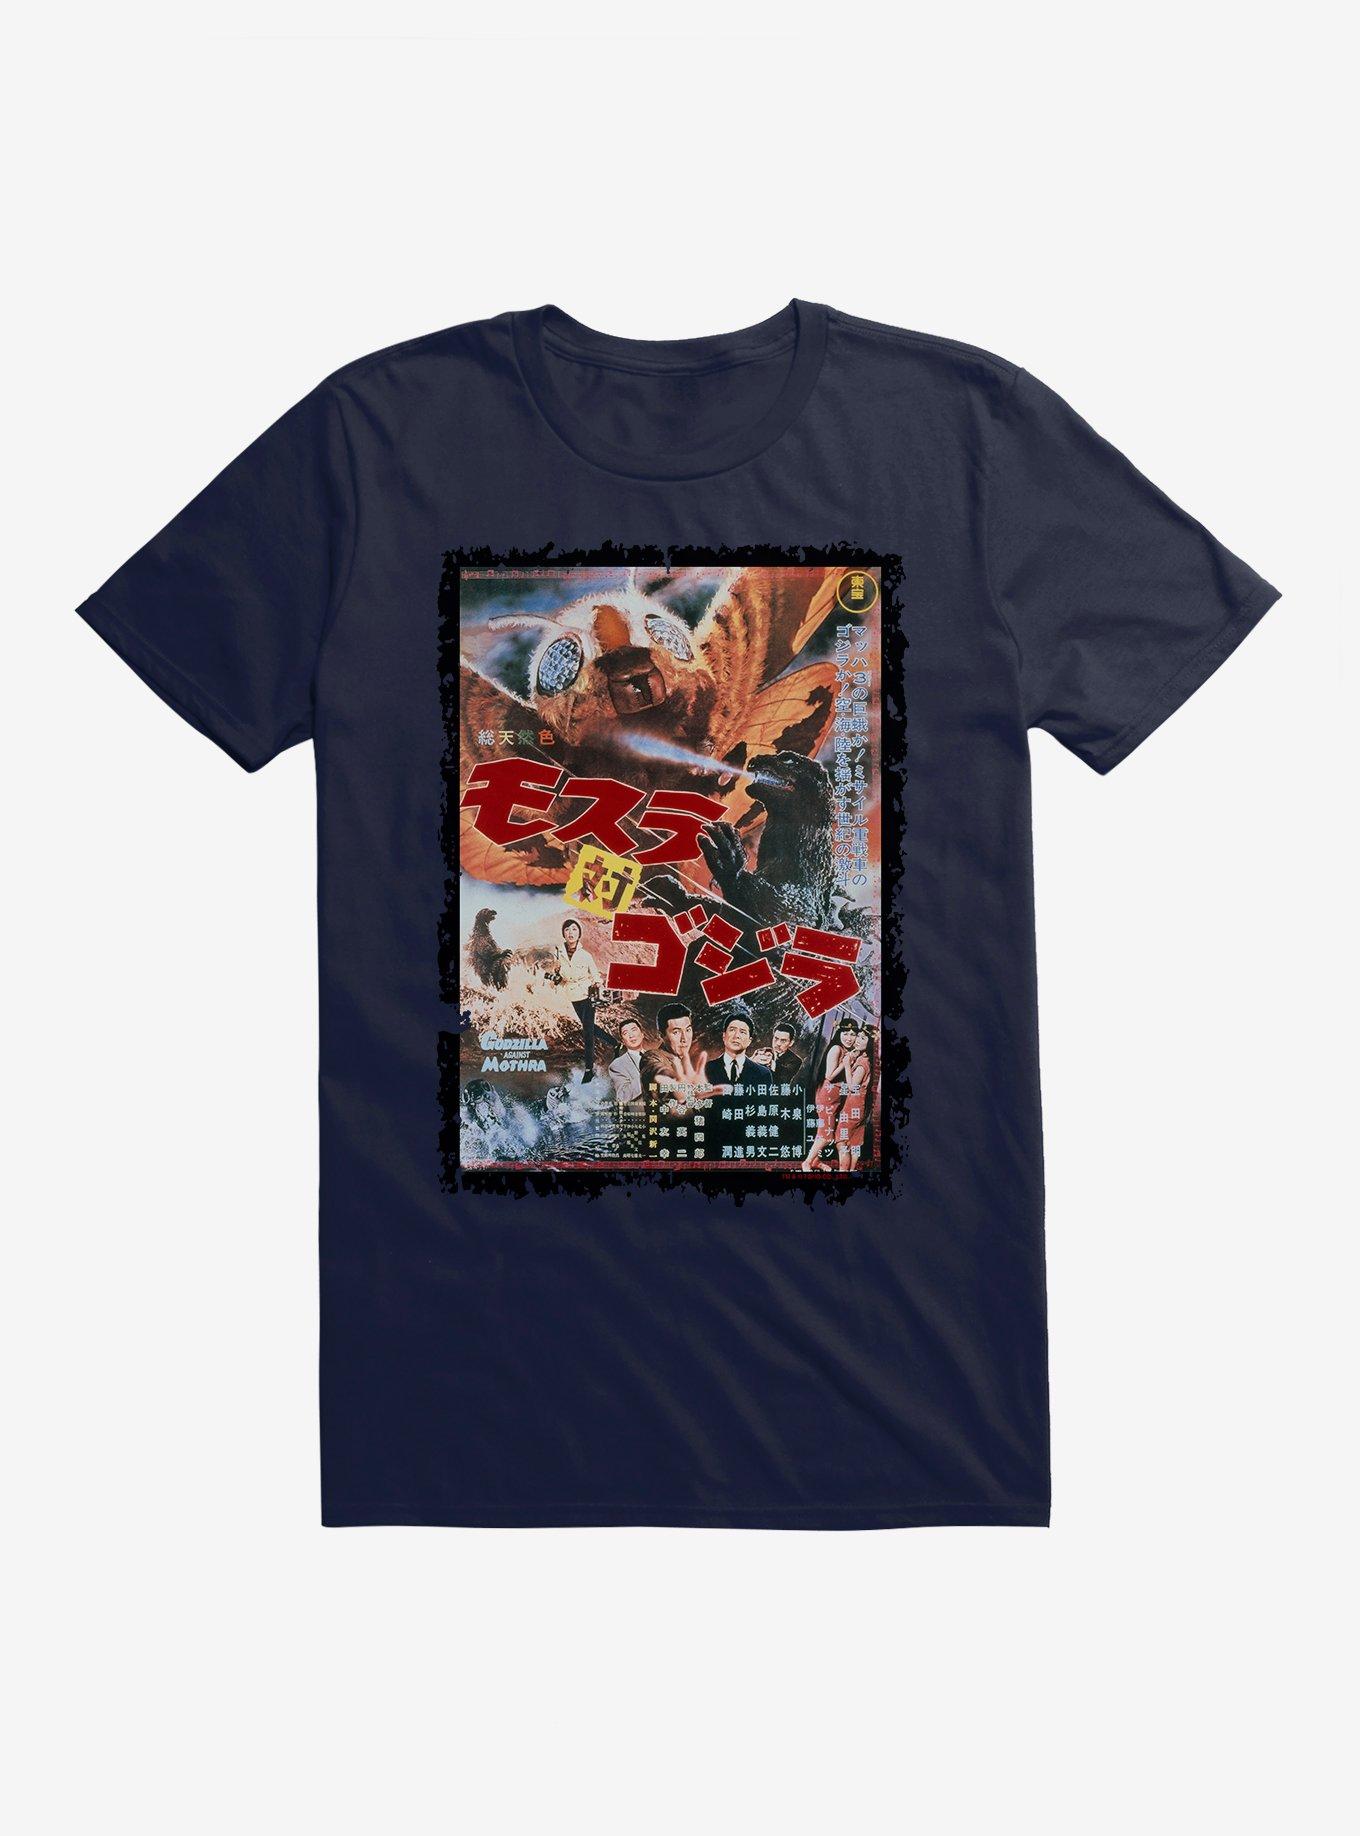 Godzilla Vs Mothra T-Shirt | Hot Topic